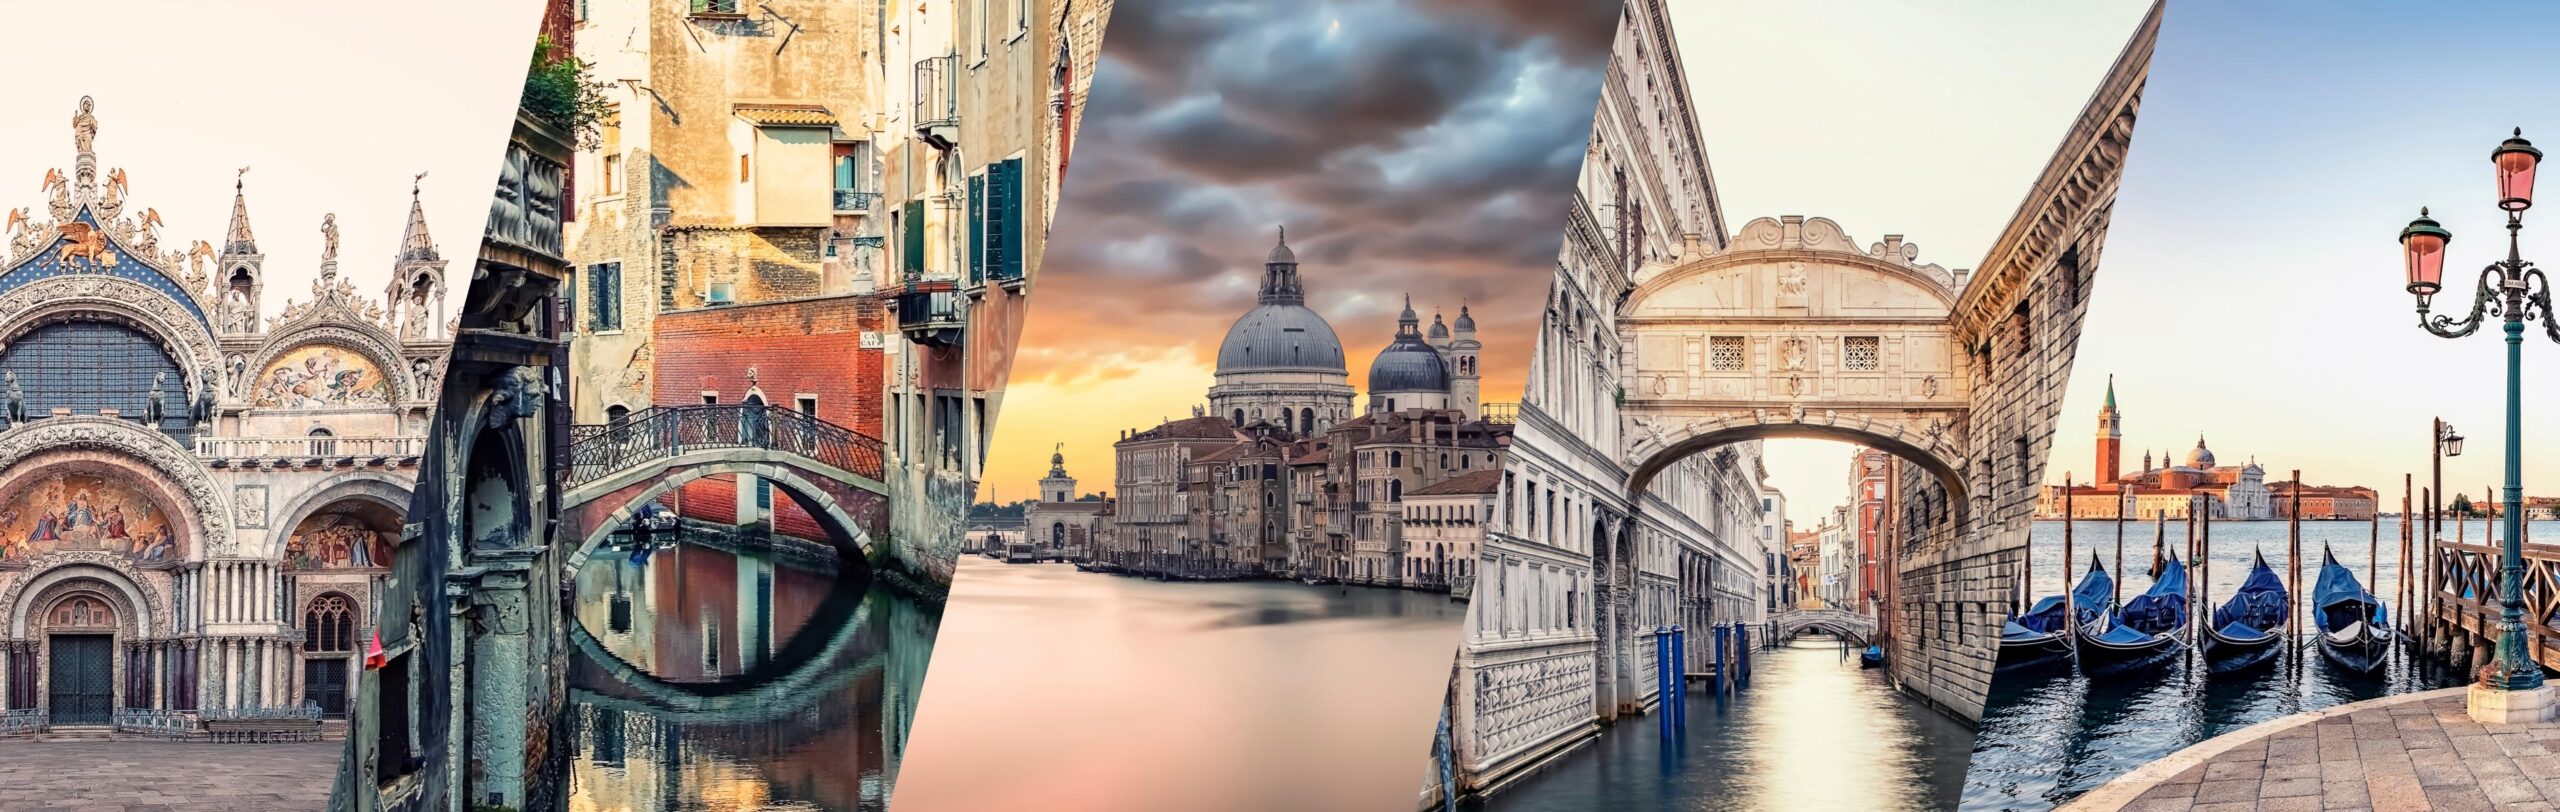 Zugangsbeitrag für Venedig in 2024: Der 5-Euro-Deal, um die Lagunenstadt zu betreten